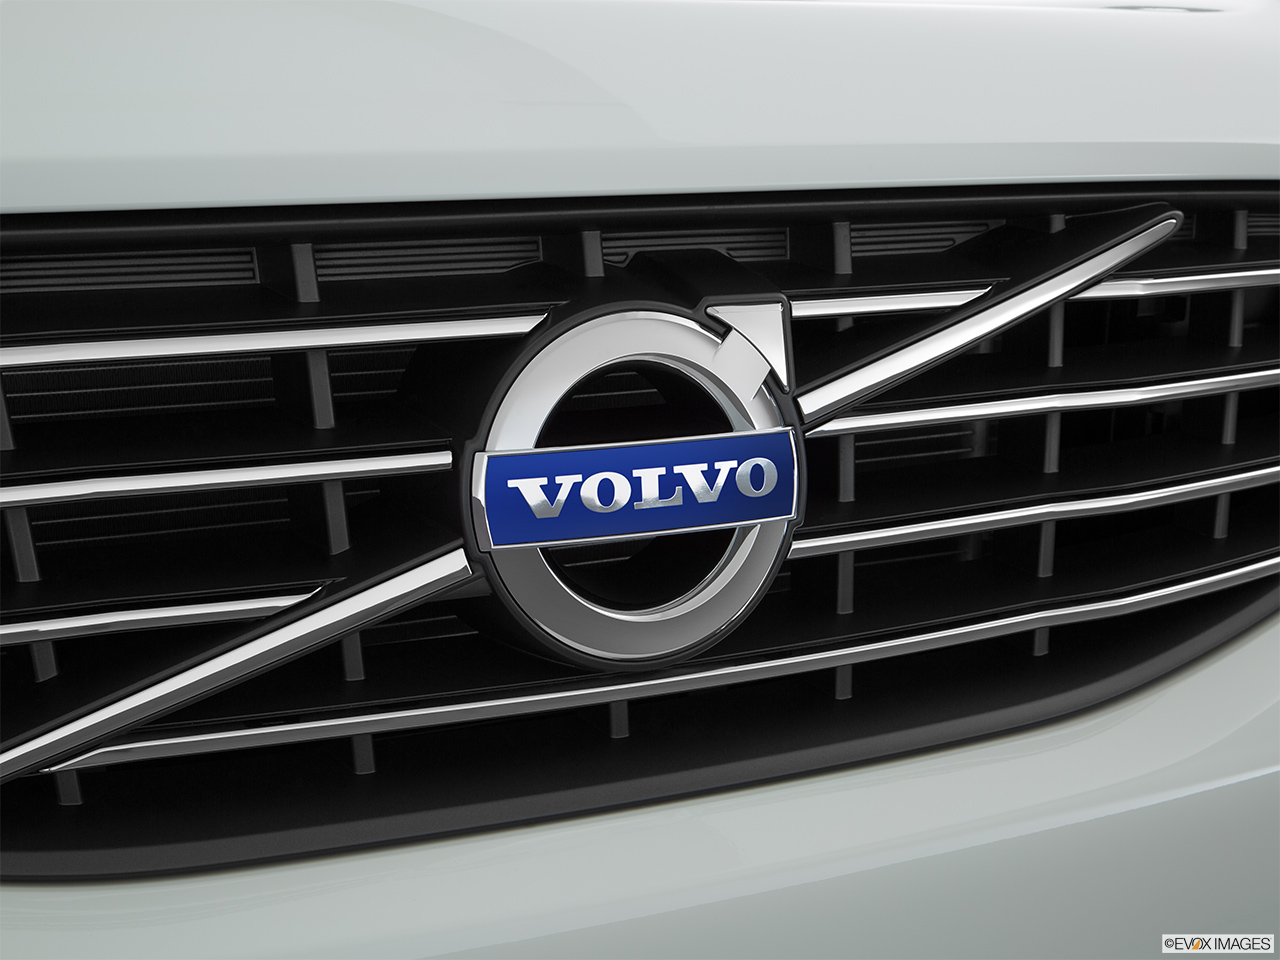 2016 Volvo XC60 T5 Drive-E FWD Premier Rear manufacture badge/emblem 